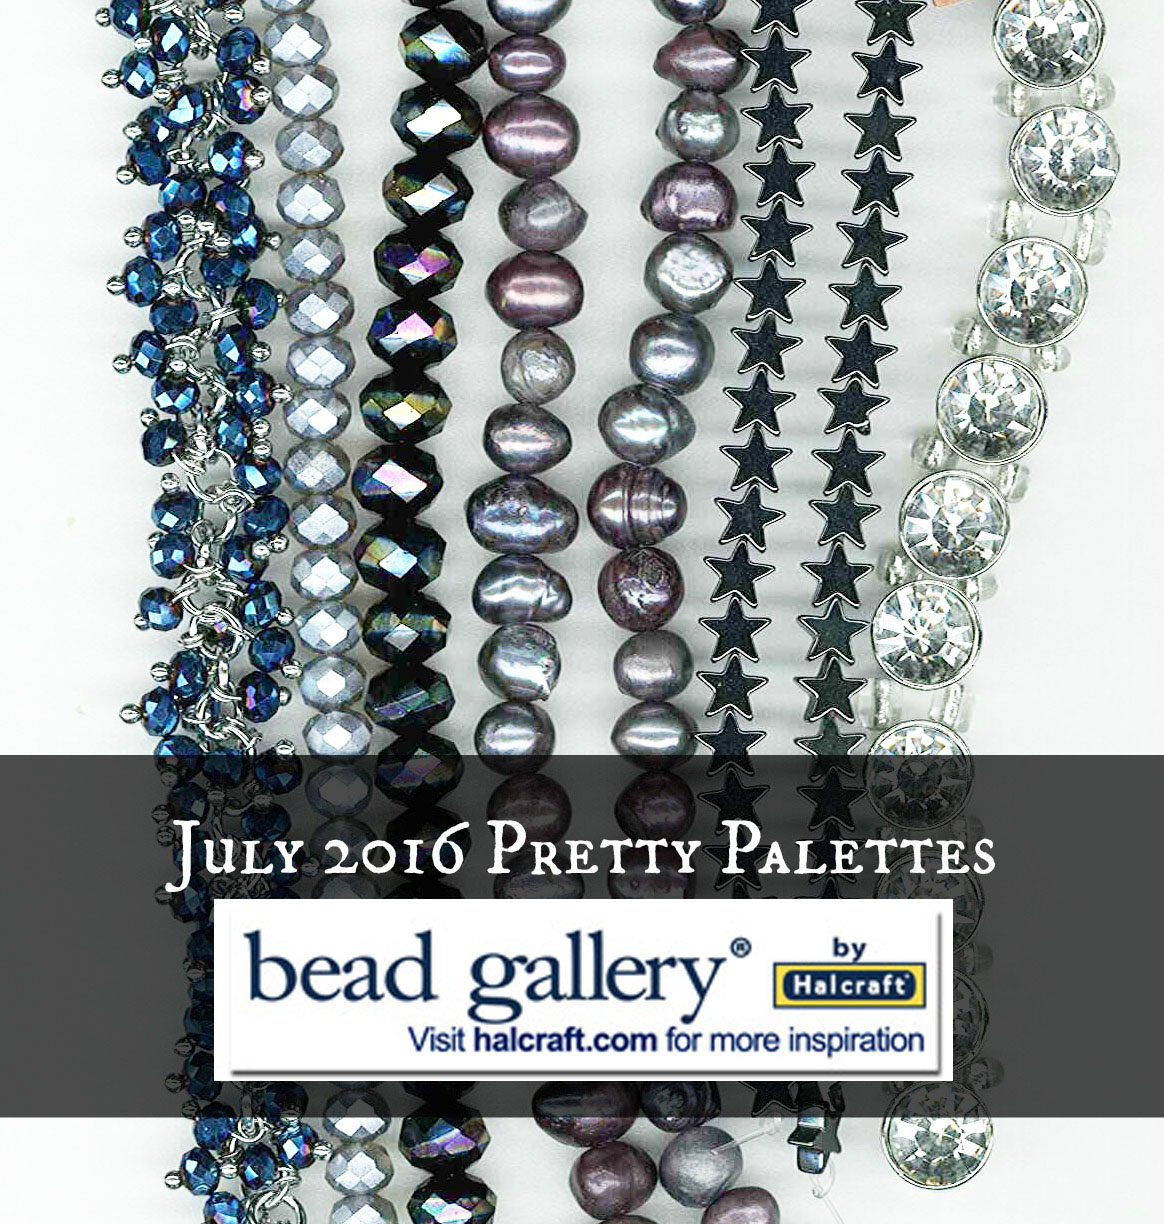 Pretty Palettes - July 2016